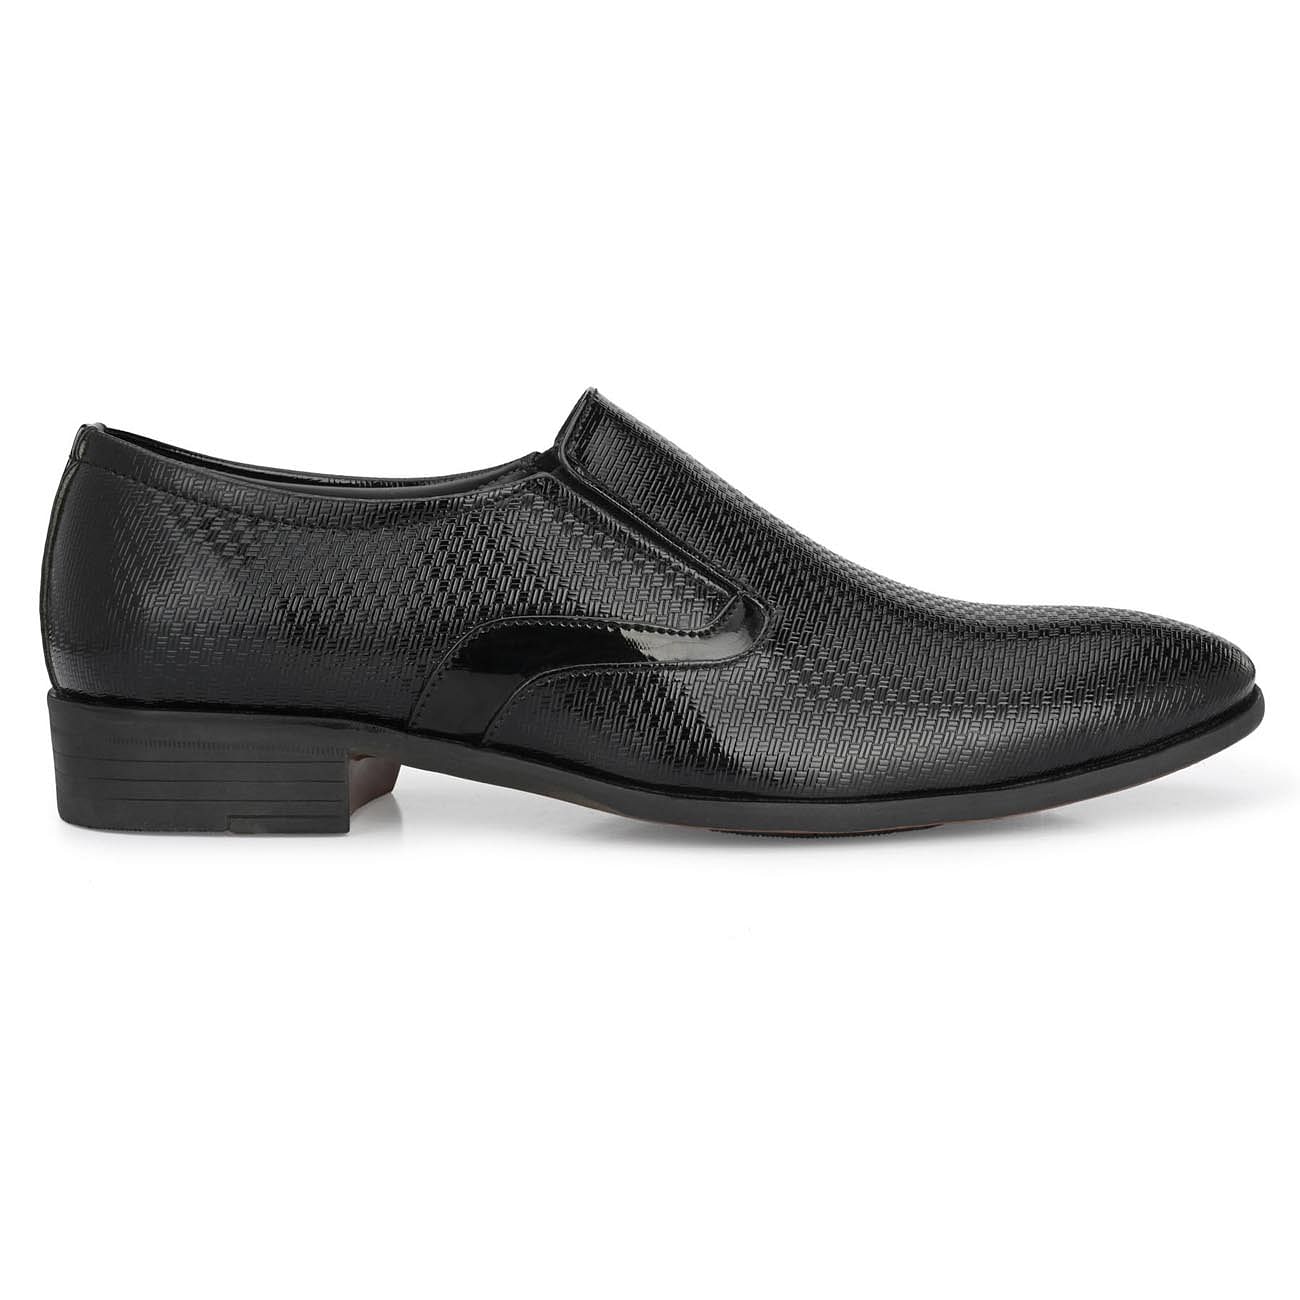 Pair-it Men's Formal Shoes - Black- LZ-T-FORMAL104